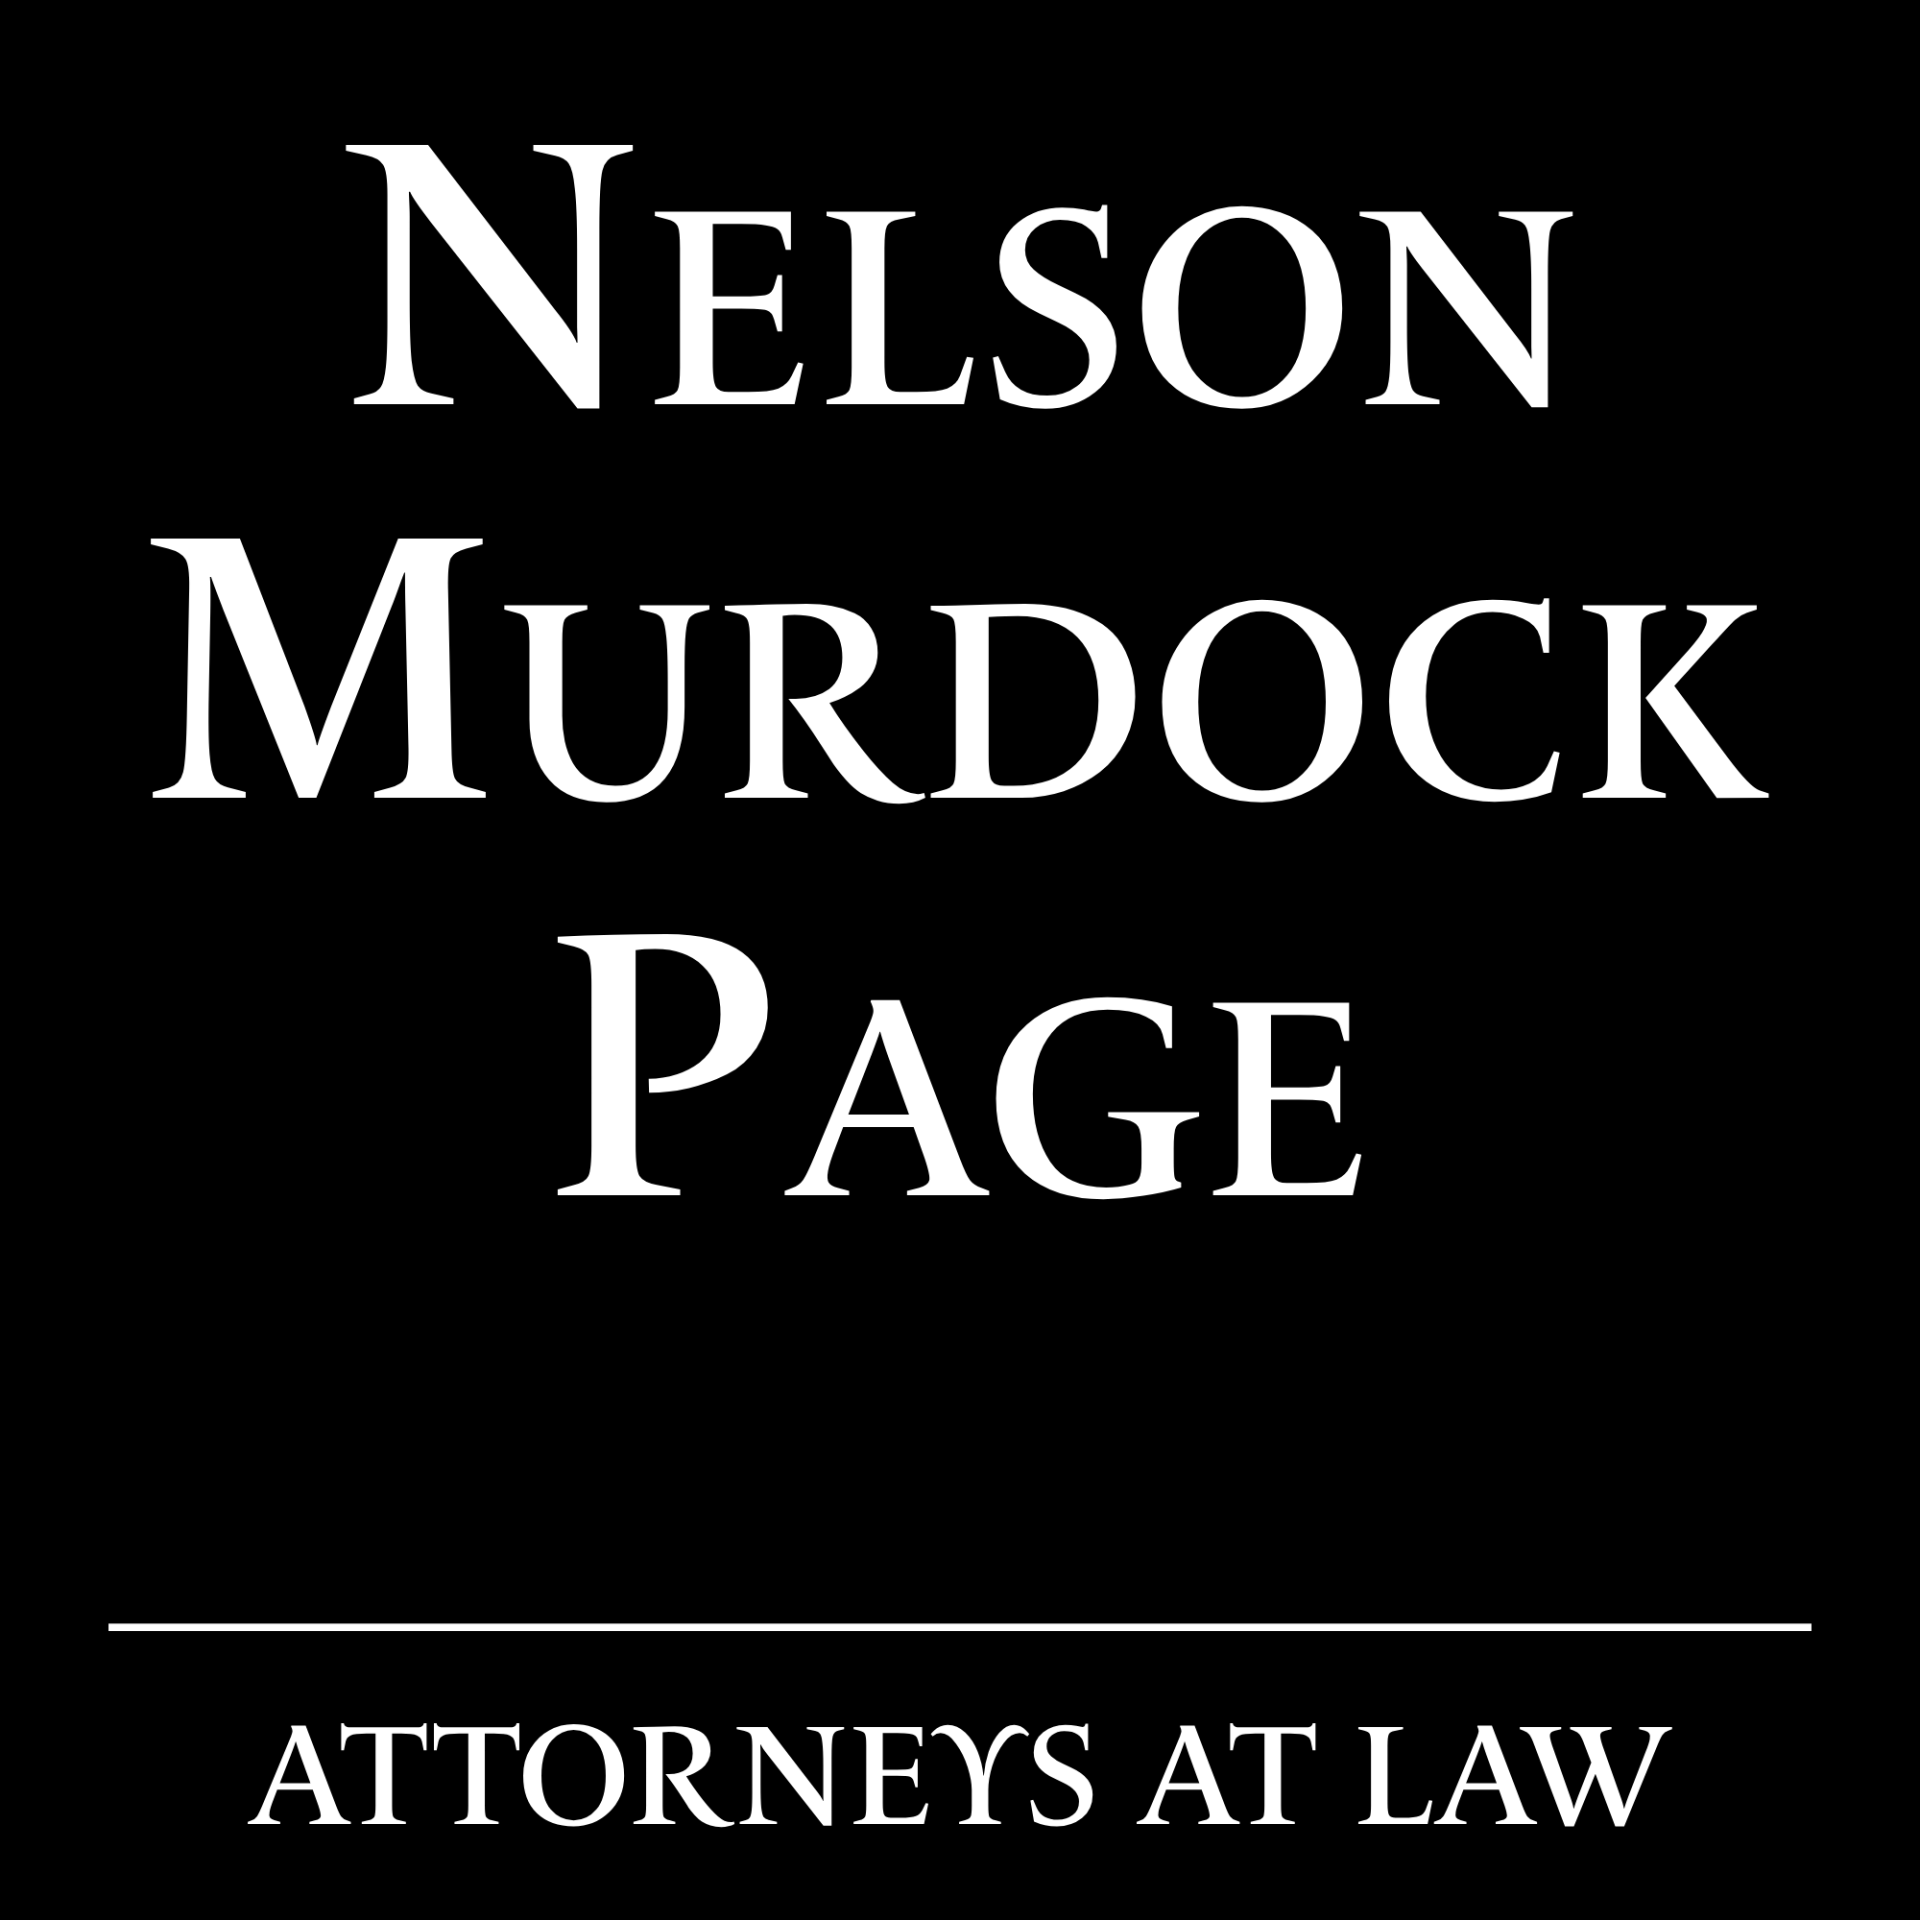 Nelson murdock et page ddba symbole